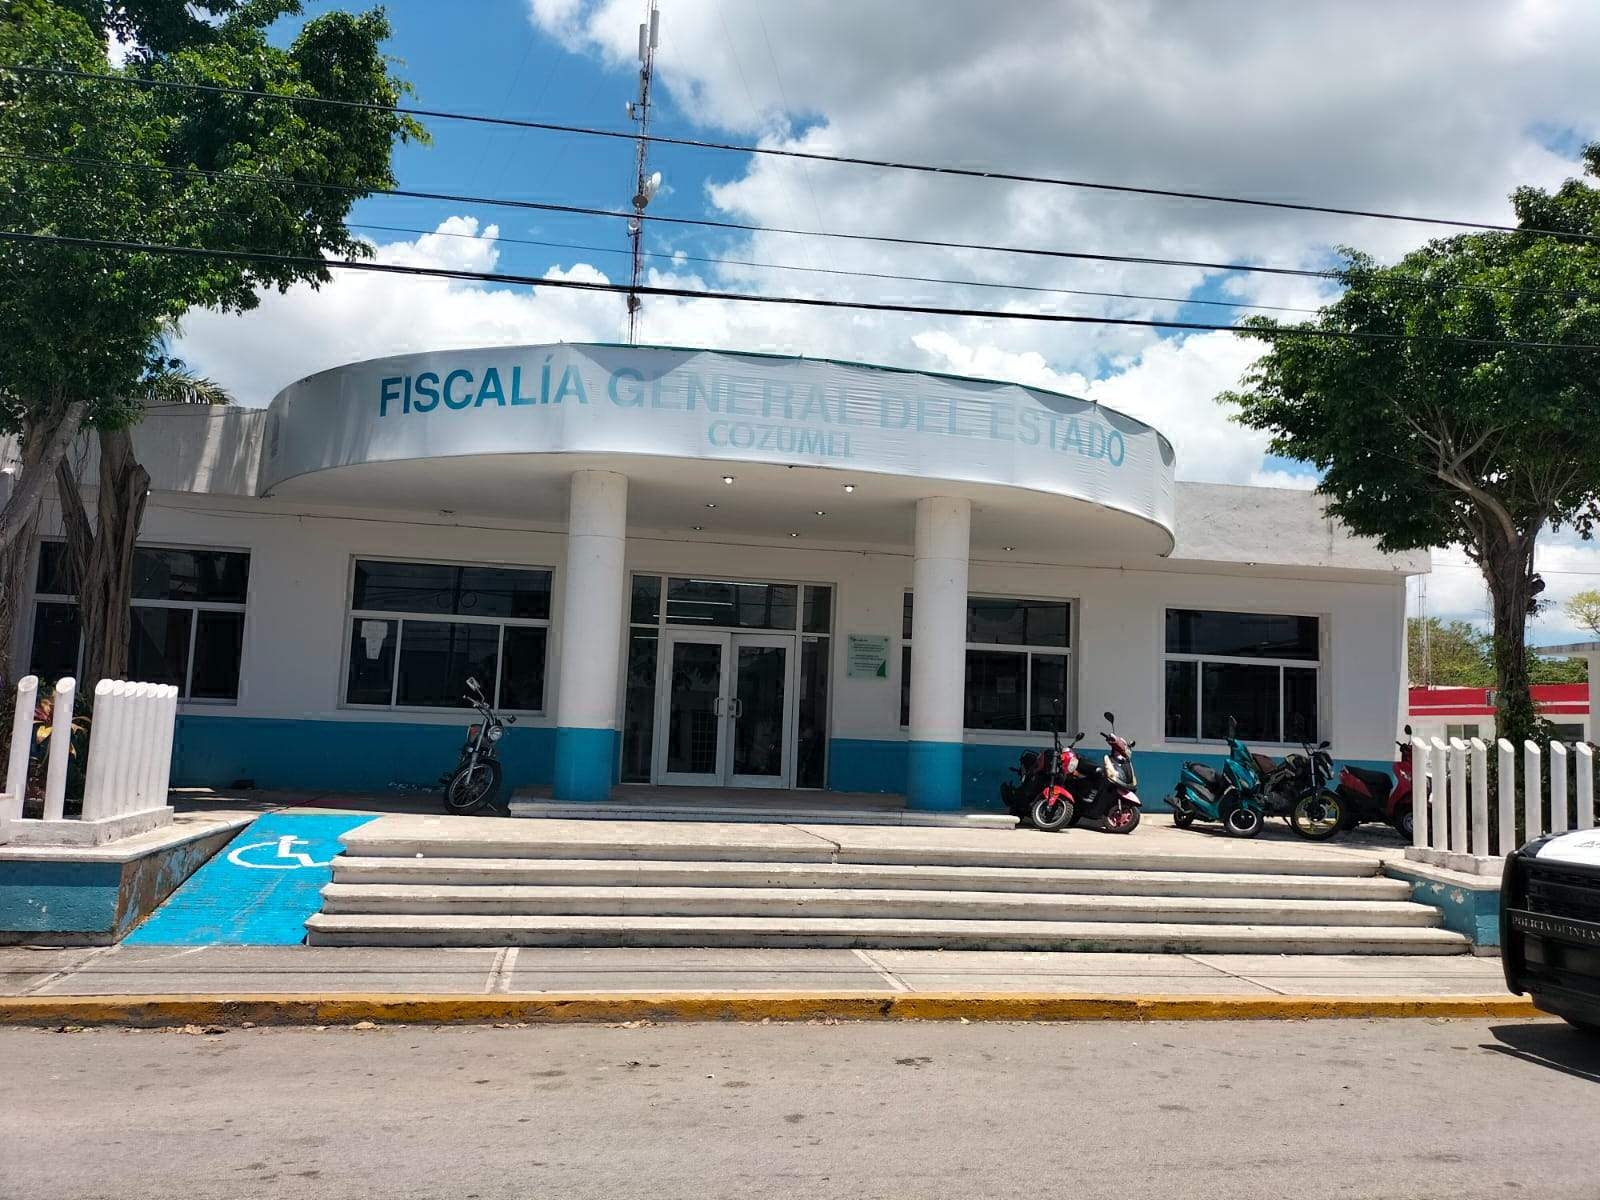 La Fiscalía de Quintana Roo lleva meses posponiendo las investigaciones sobre la delincuencia en Cozumel